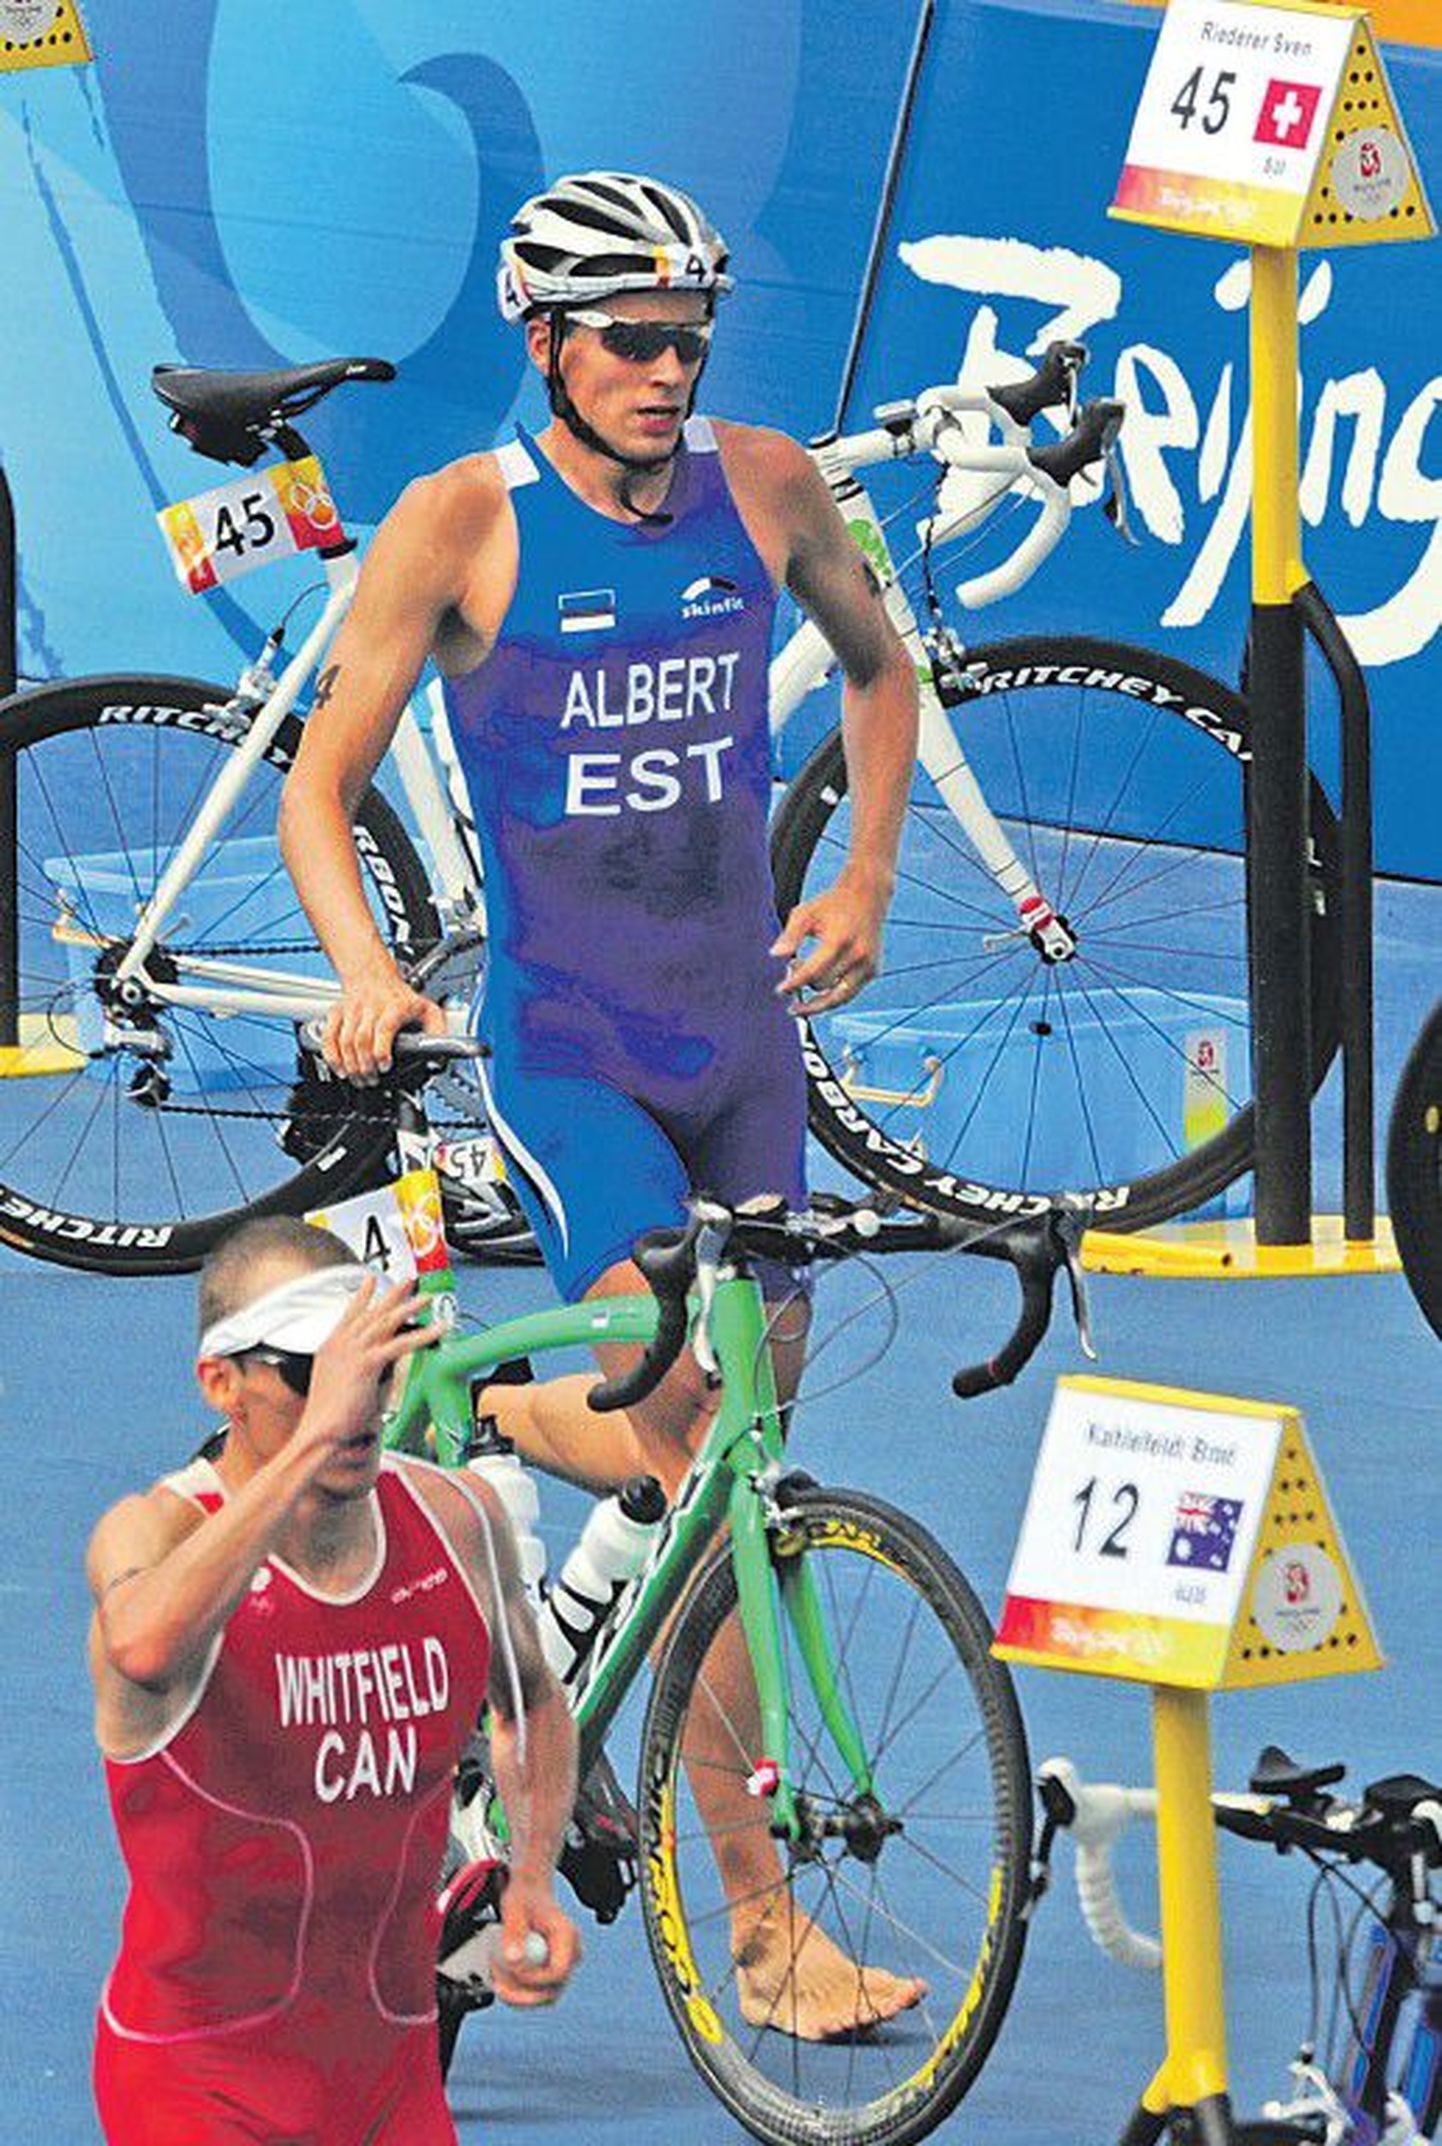 По сравнению с пекинской Олимпиадой триатлет Марко Альберт попал в очень сложное положение. Для того, чтобы пройти на Олимпиаду в Лондоне, необходимо набрать очки за результаты на этапах WCS по всему миру, а эстонским спортсменам туда не попасть.